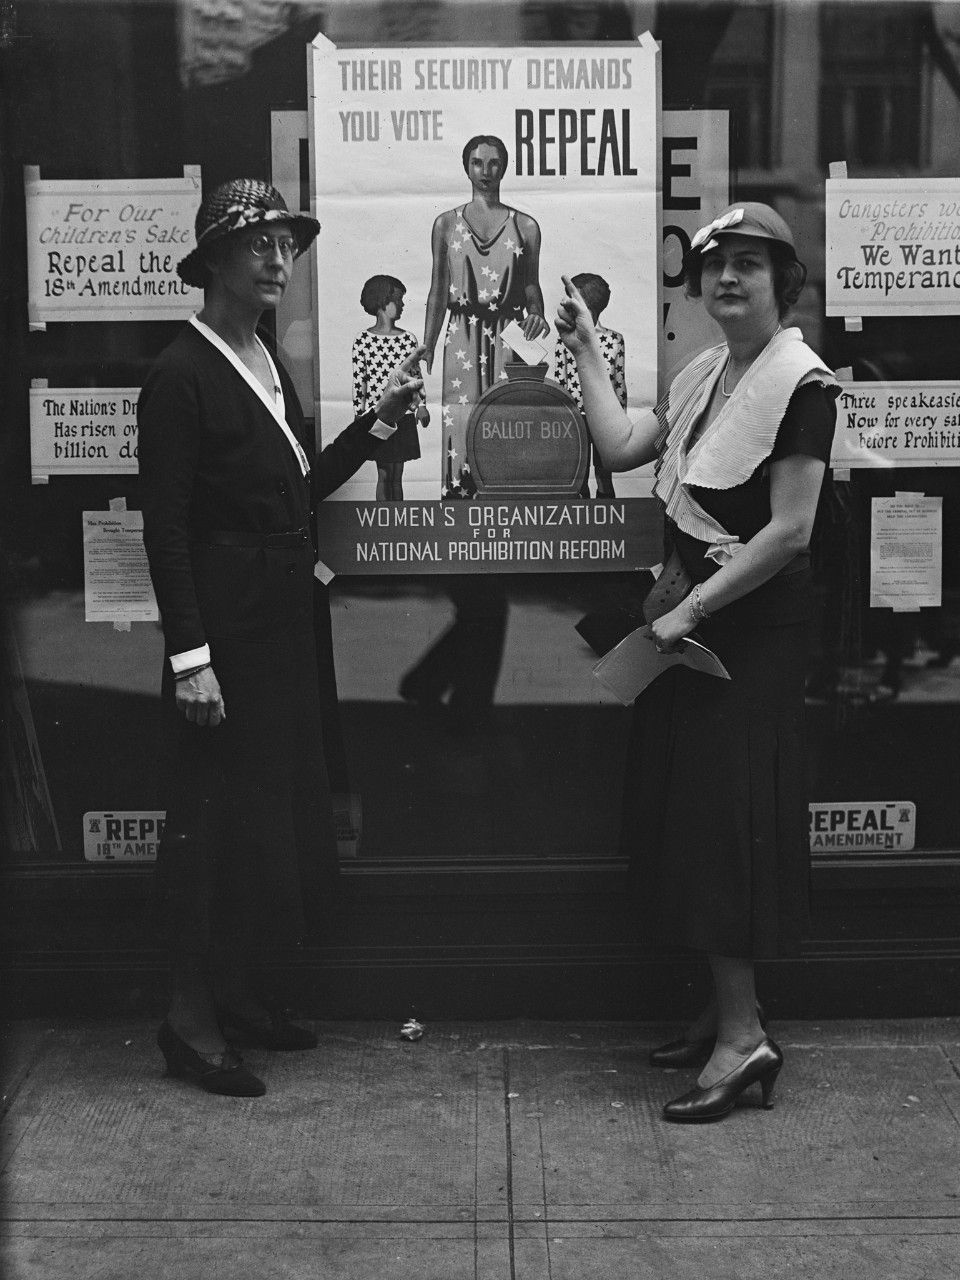 Aanhangers van de Womens Organization for National Prohibition Reform poseren in Washington DC voor posters waarop herroeping van de Drooglegging wordt geist